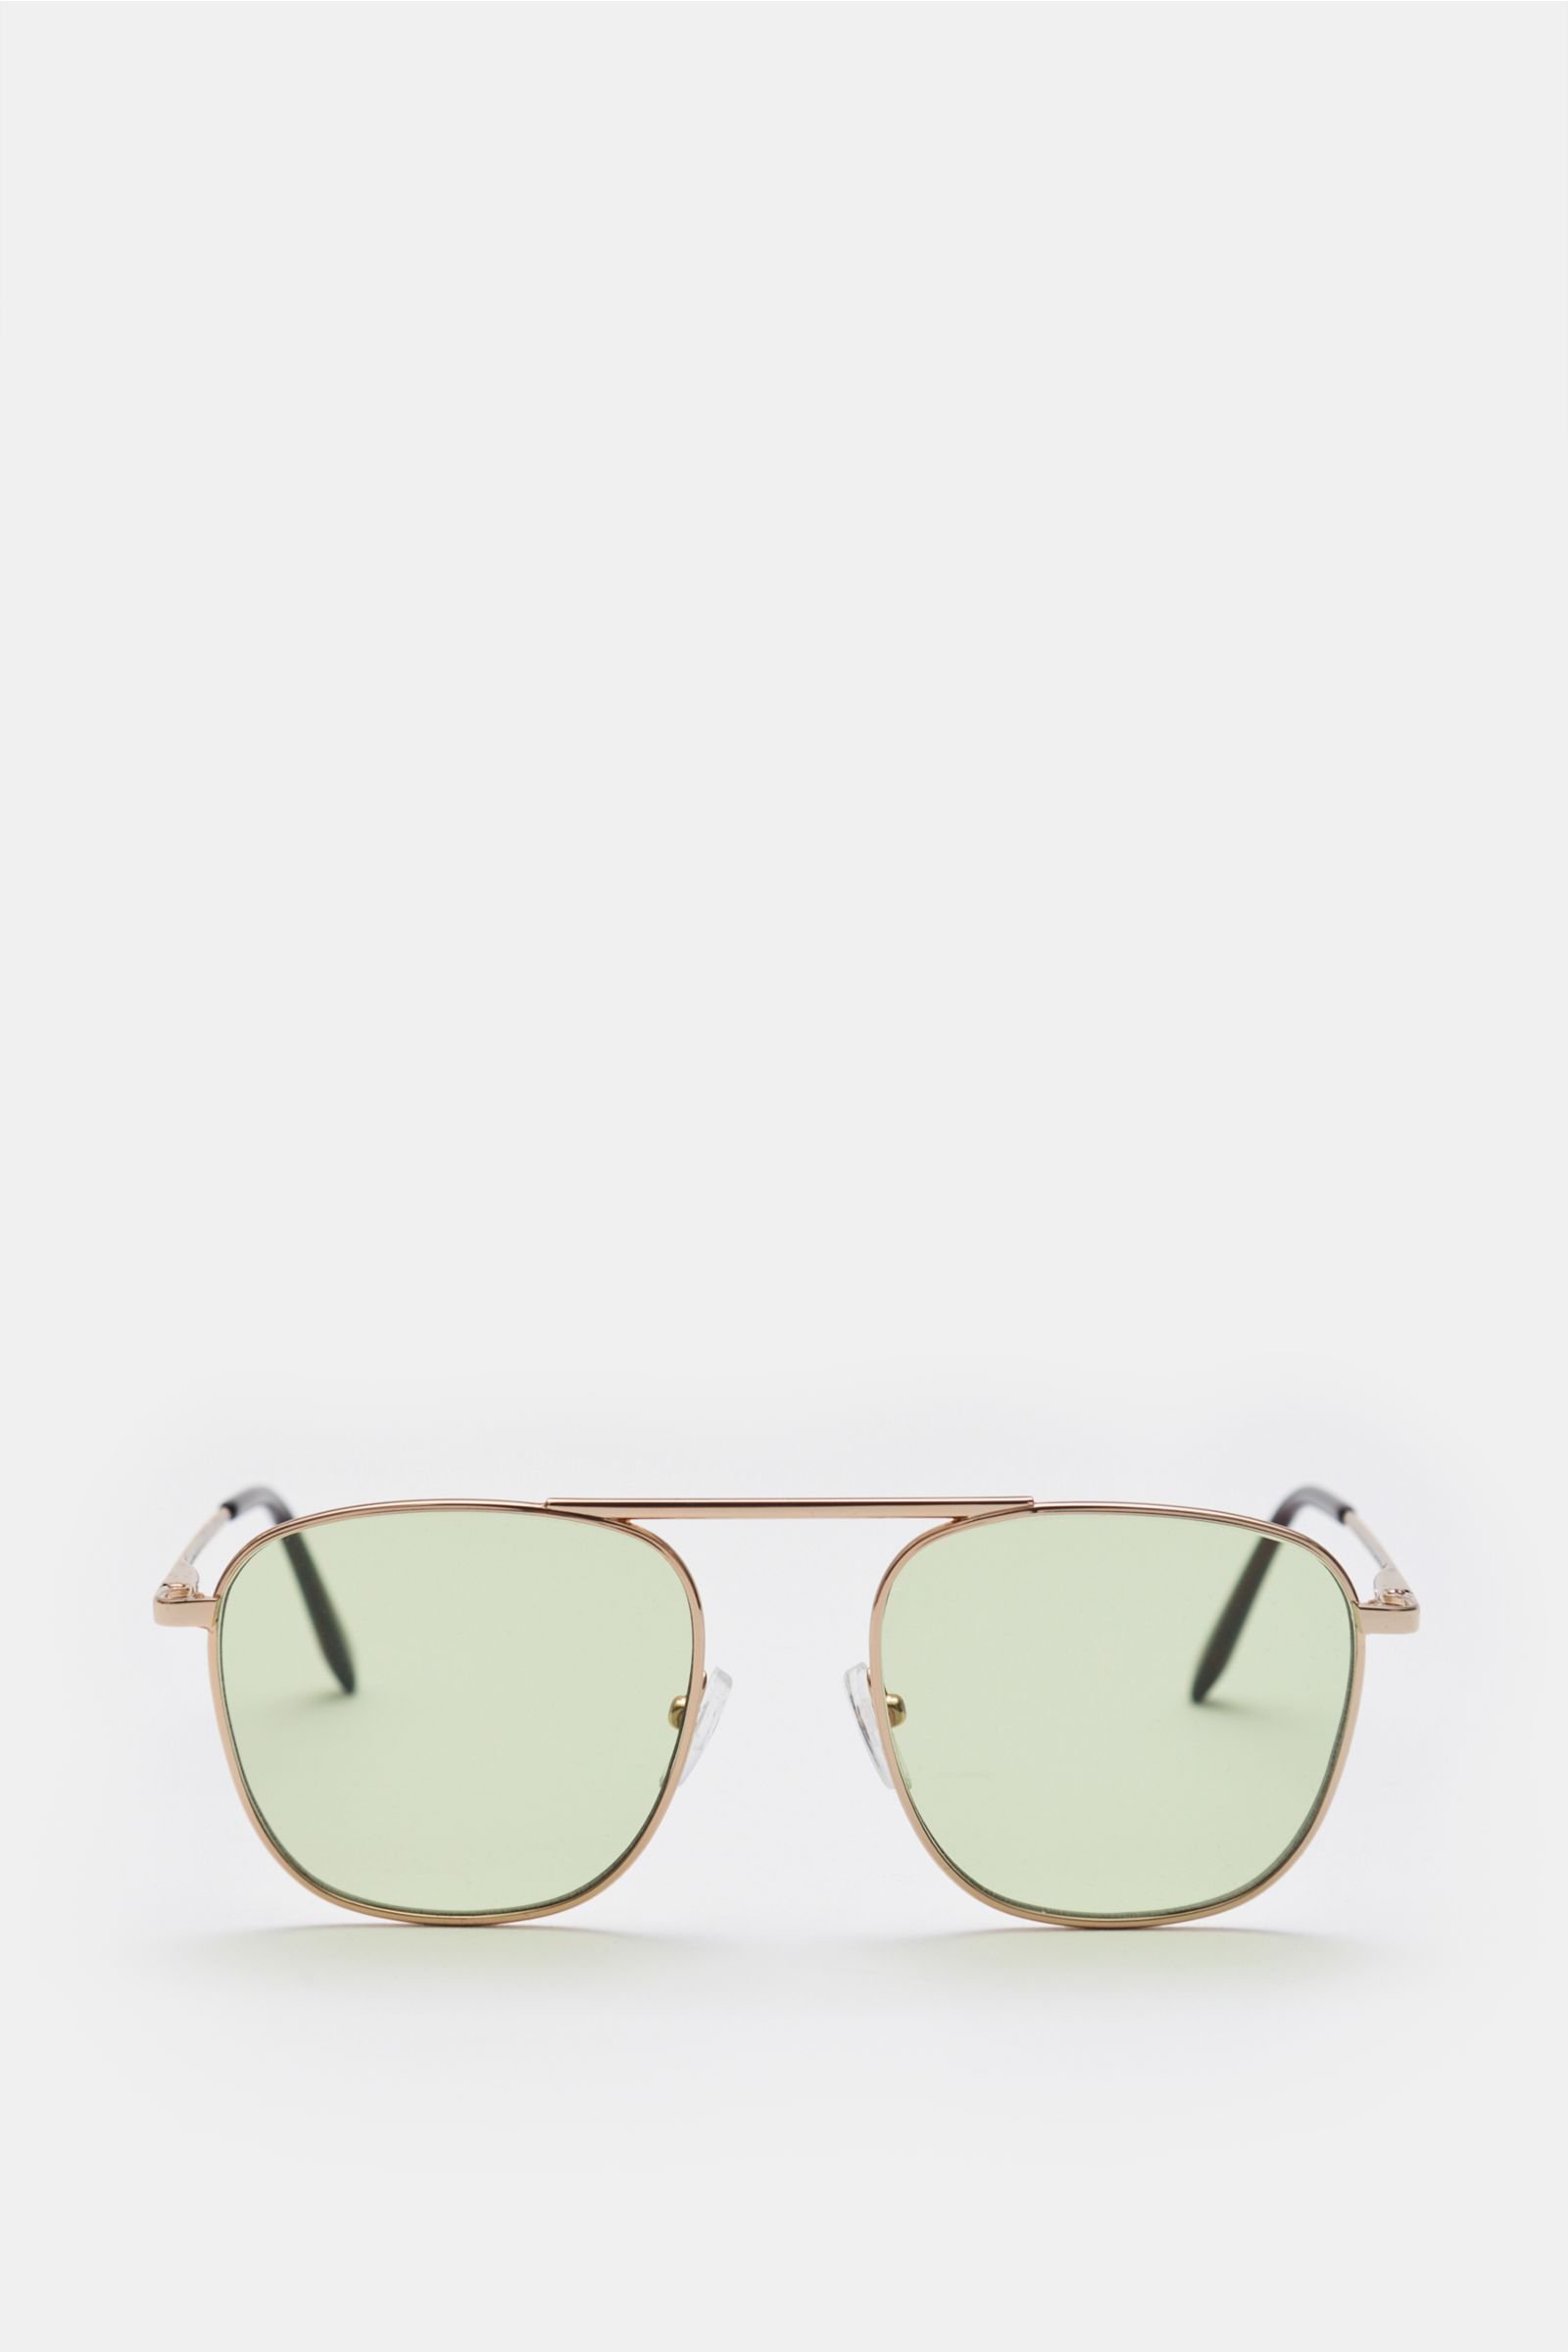 Sonnenbrille gold/grün 